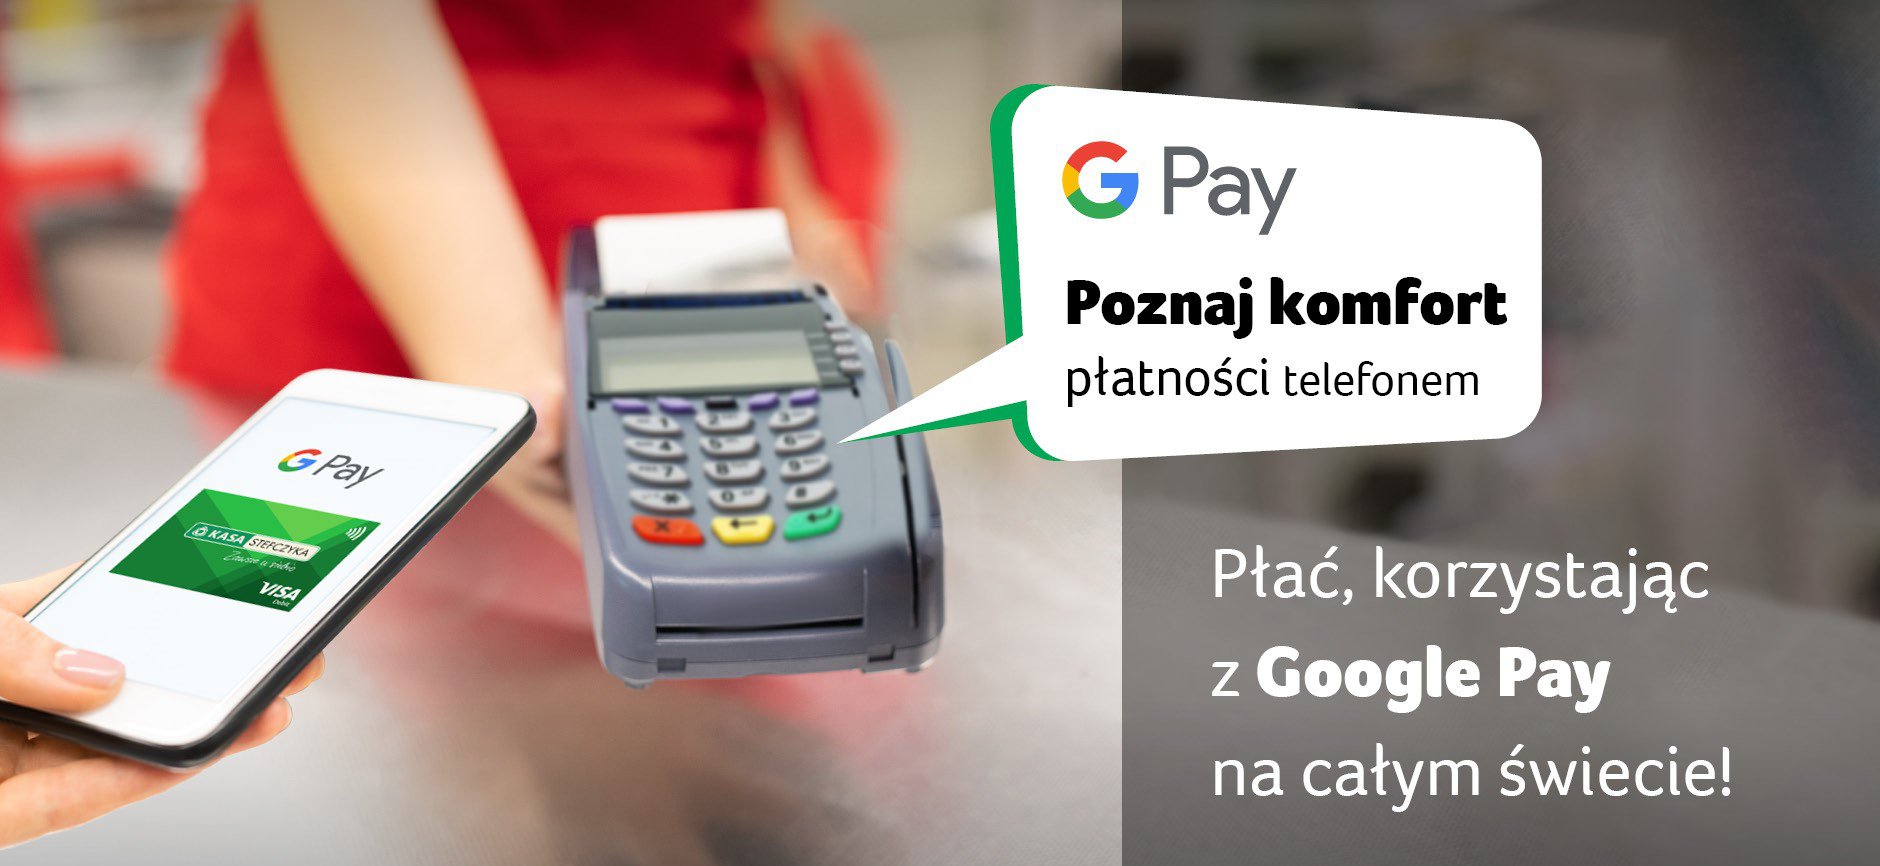 Płać za zakupy telefonem aplikacją Google Pay.